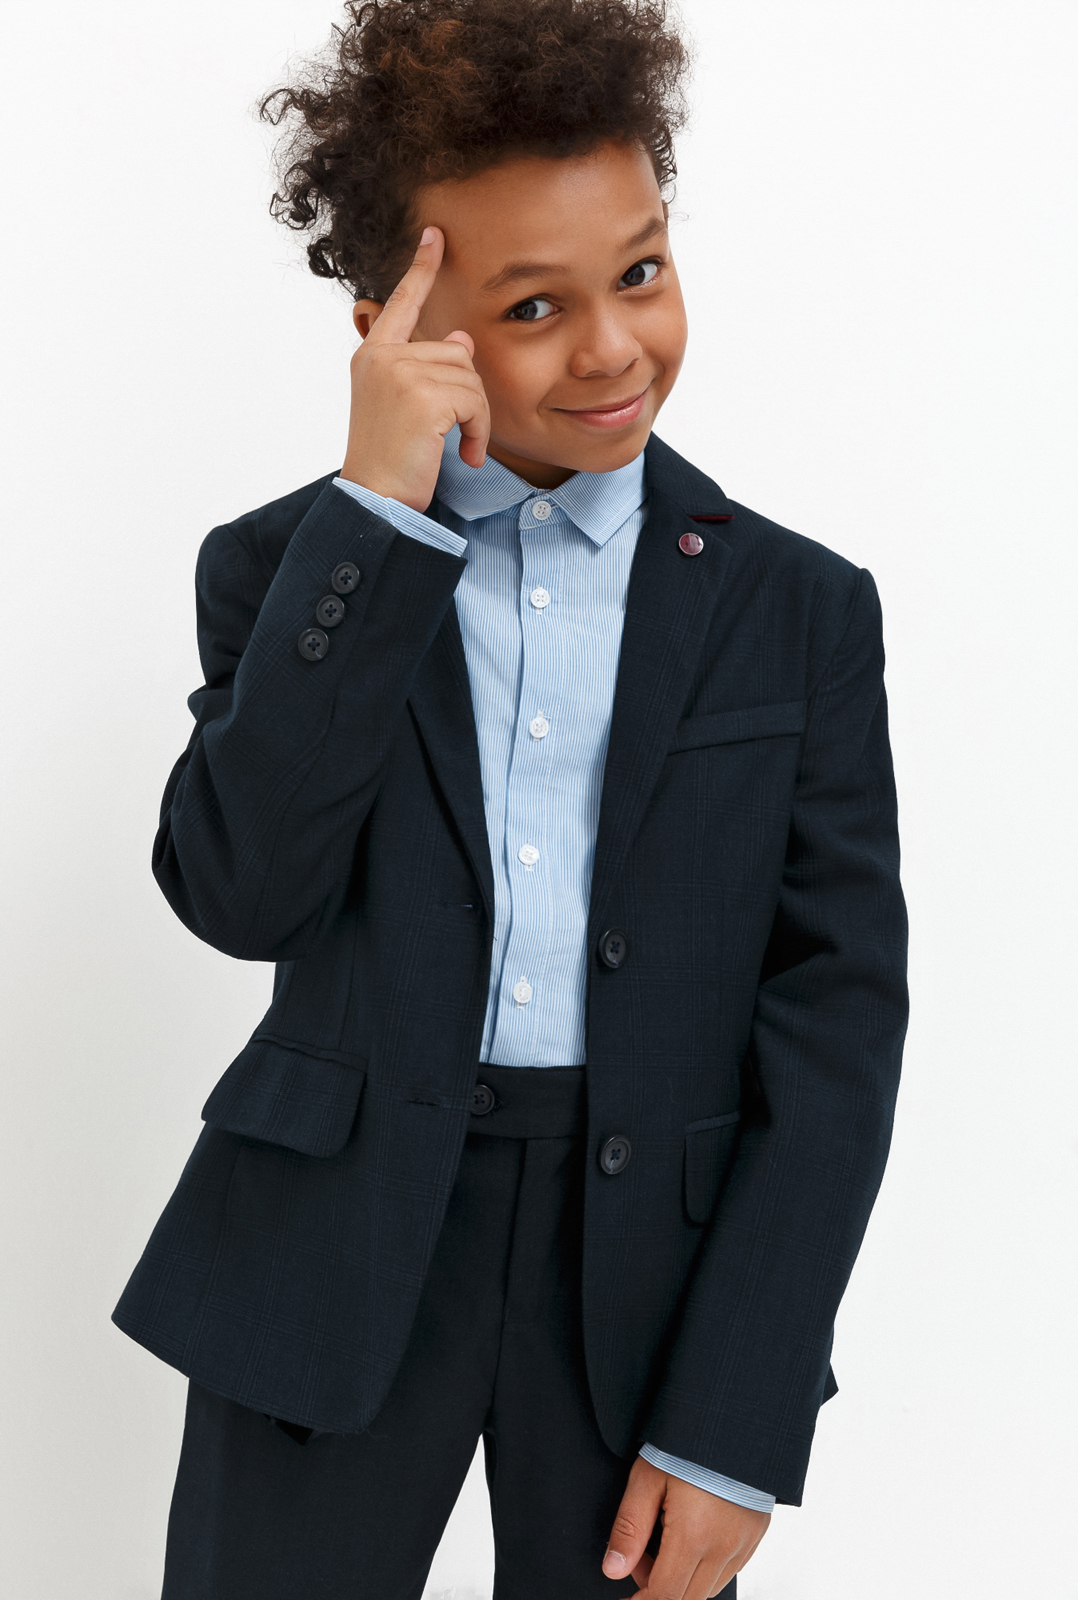 Пиджак для мальчика Acoola Chandler, цвет: темно-голубой. 20140130030_600. Размер 170